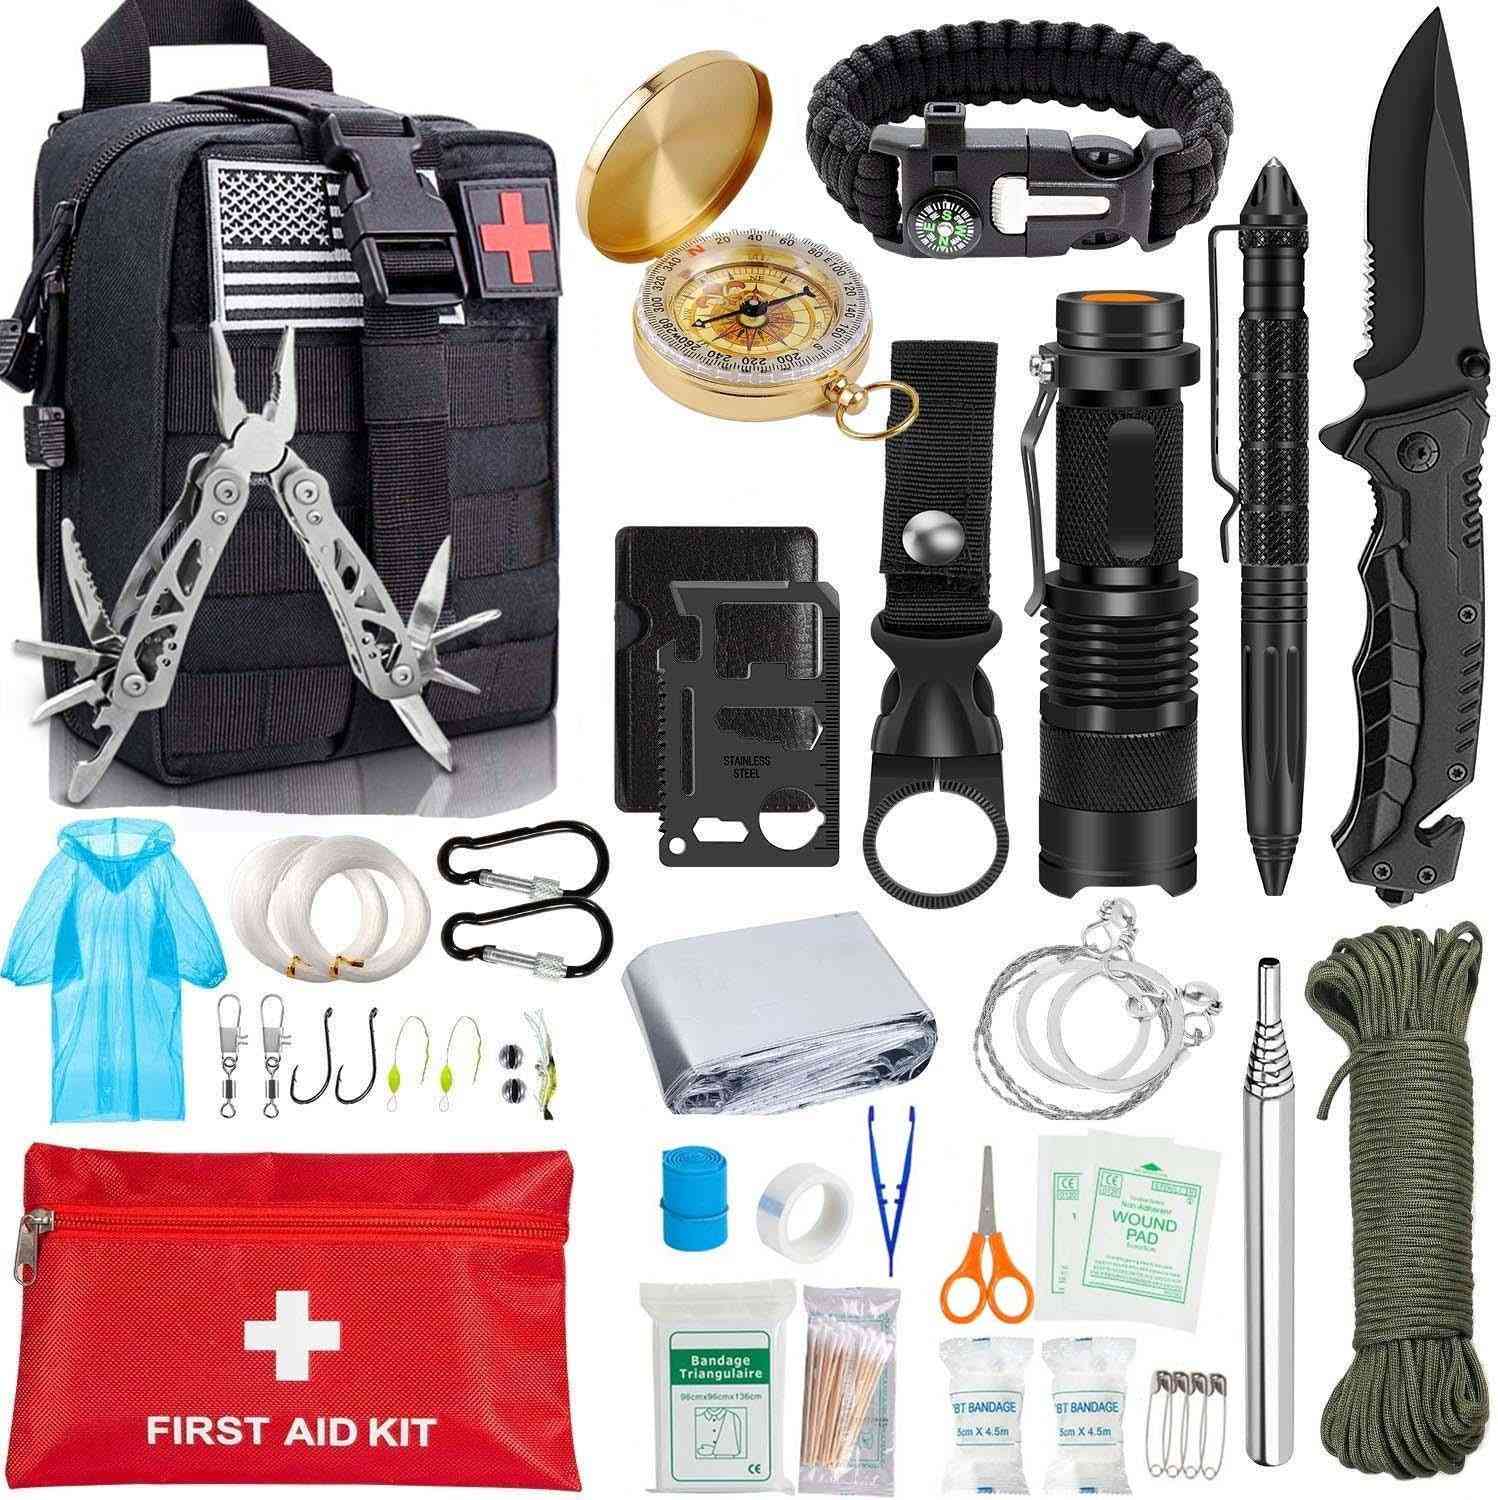 Edc survival, varusteet työkalusarja - viltti, taktinen kynä, taskulamppu, pihdit, teräsaha